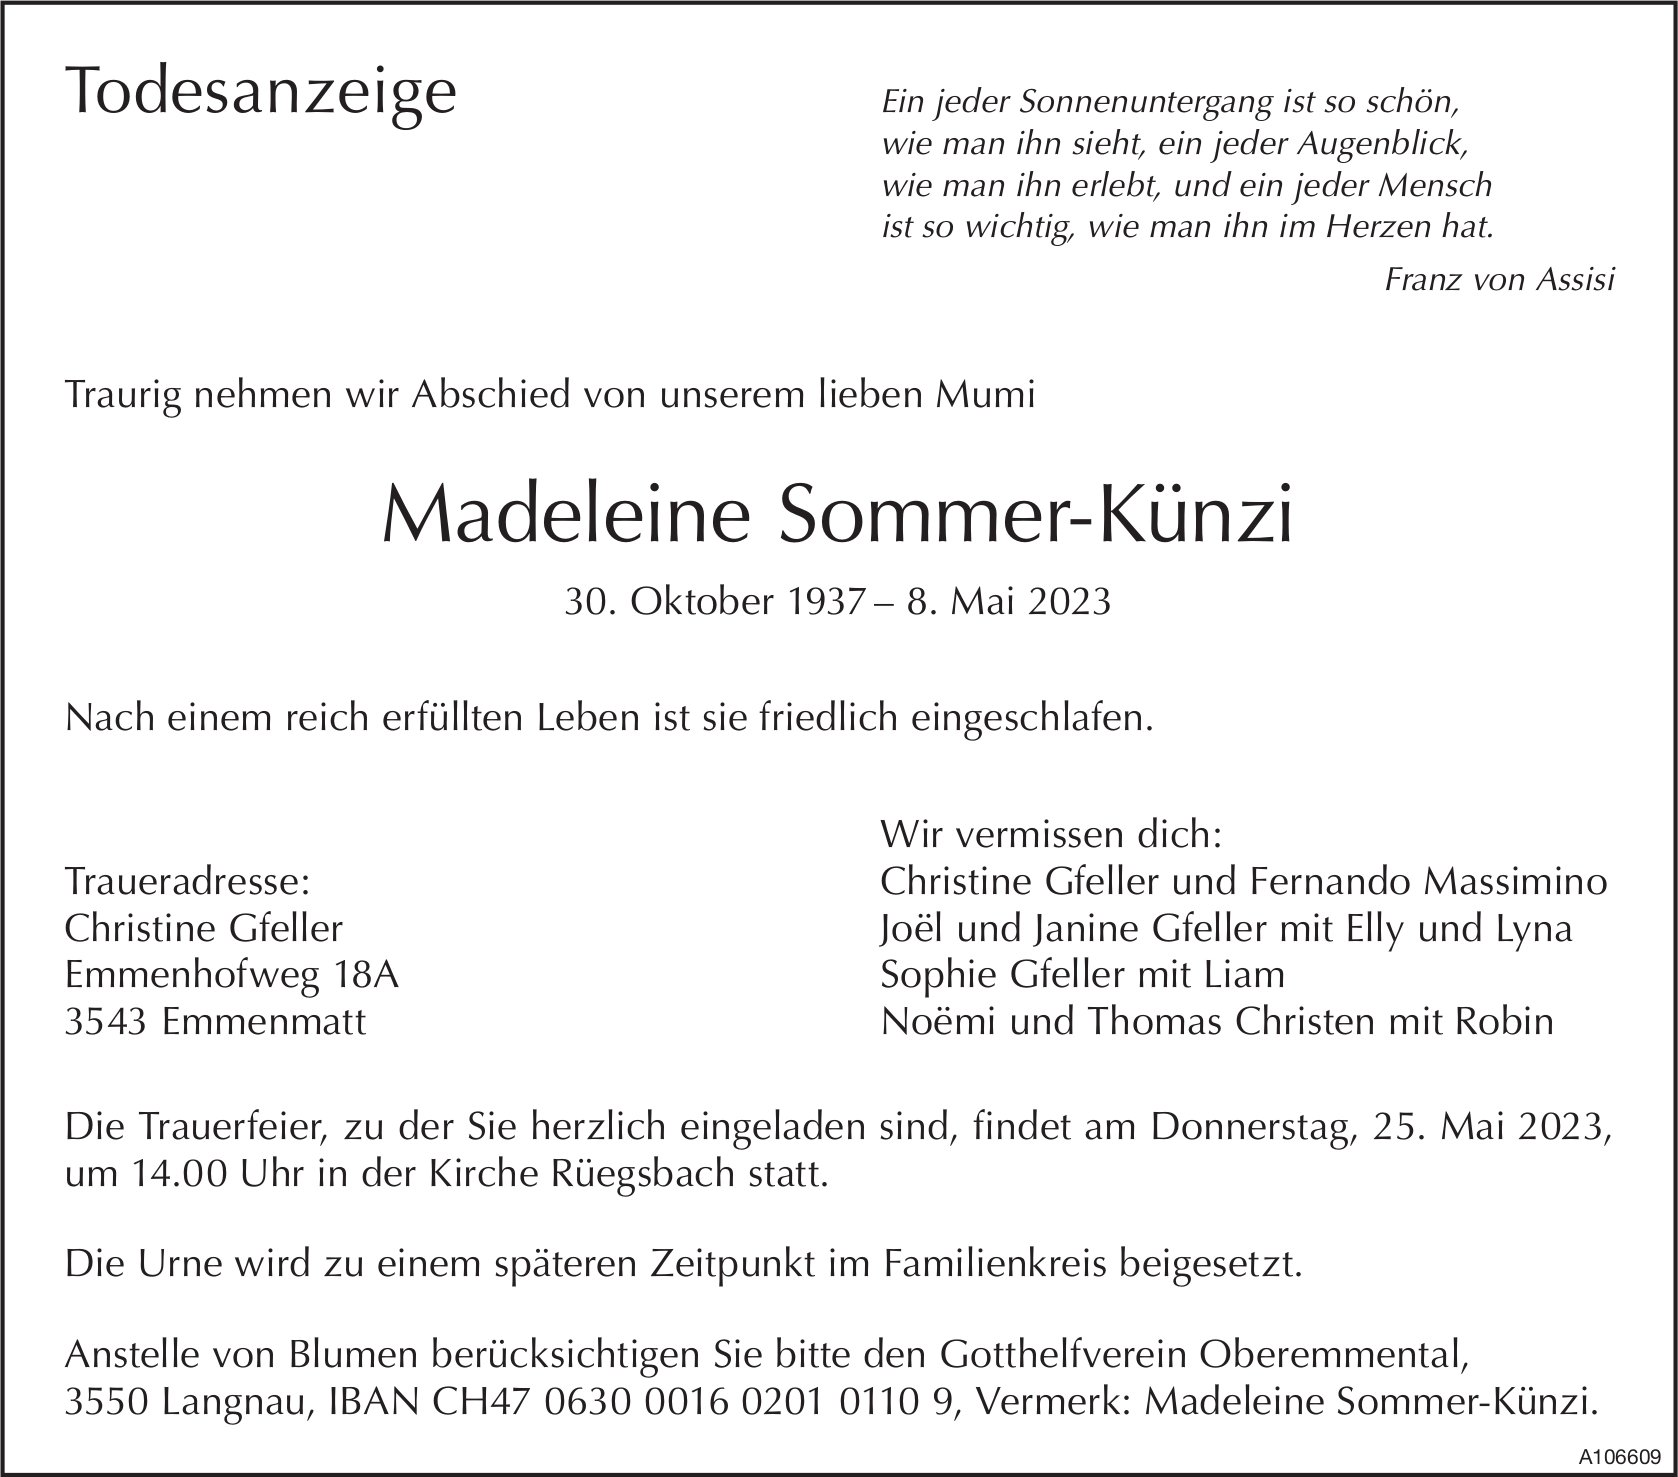 Madeleine Sommer-Künzi, Mai 2023 / TA